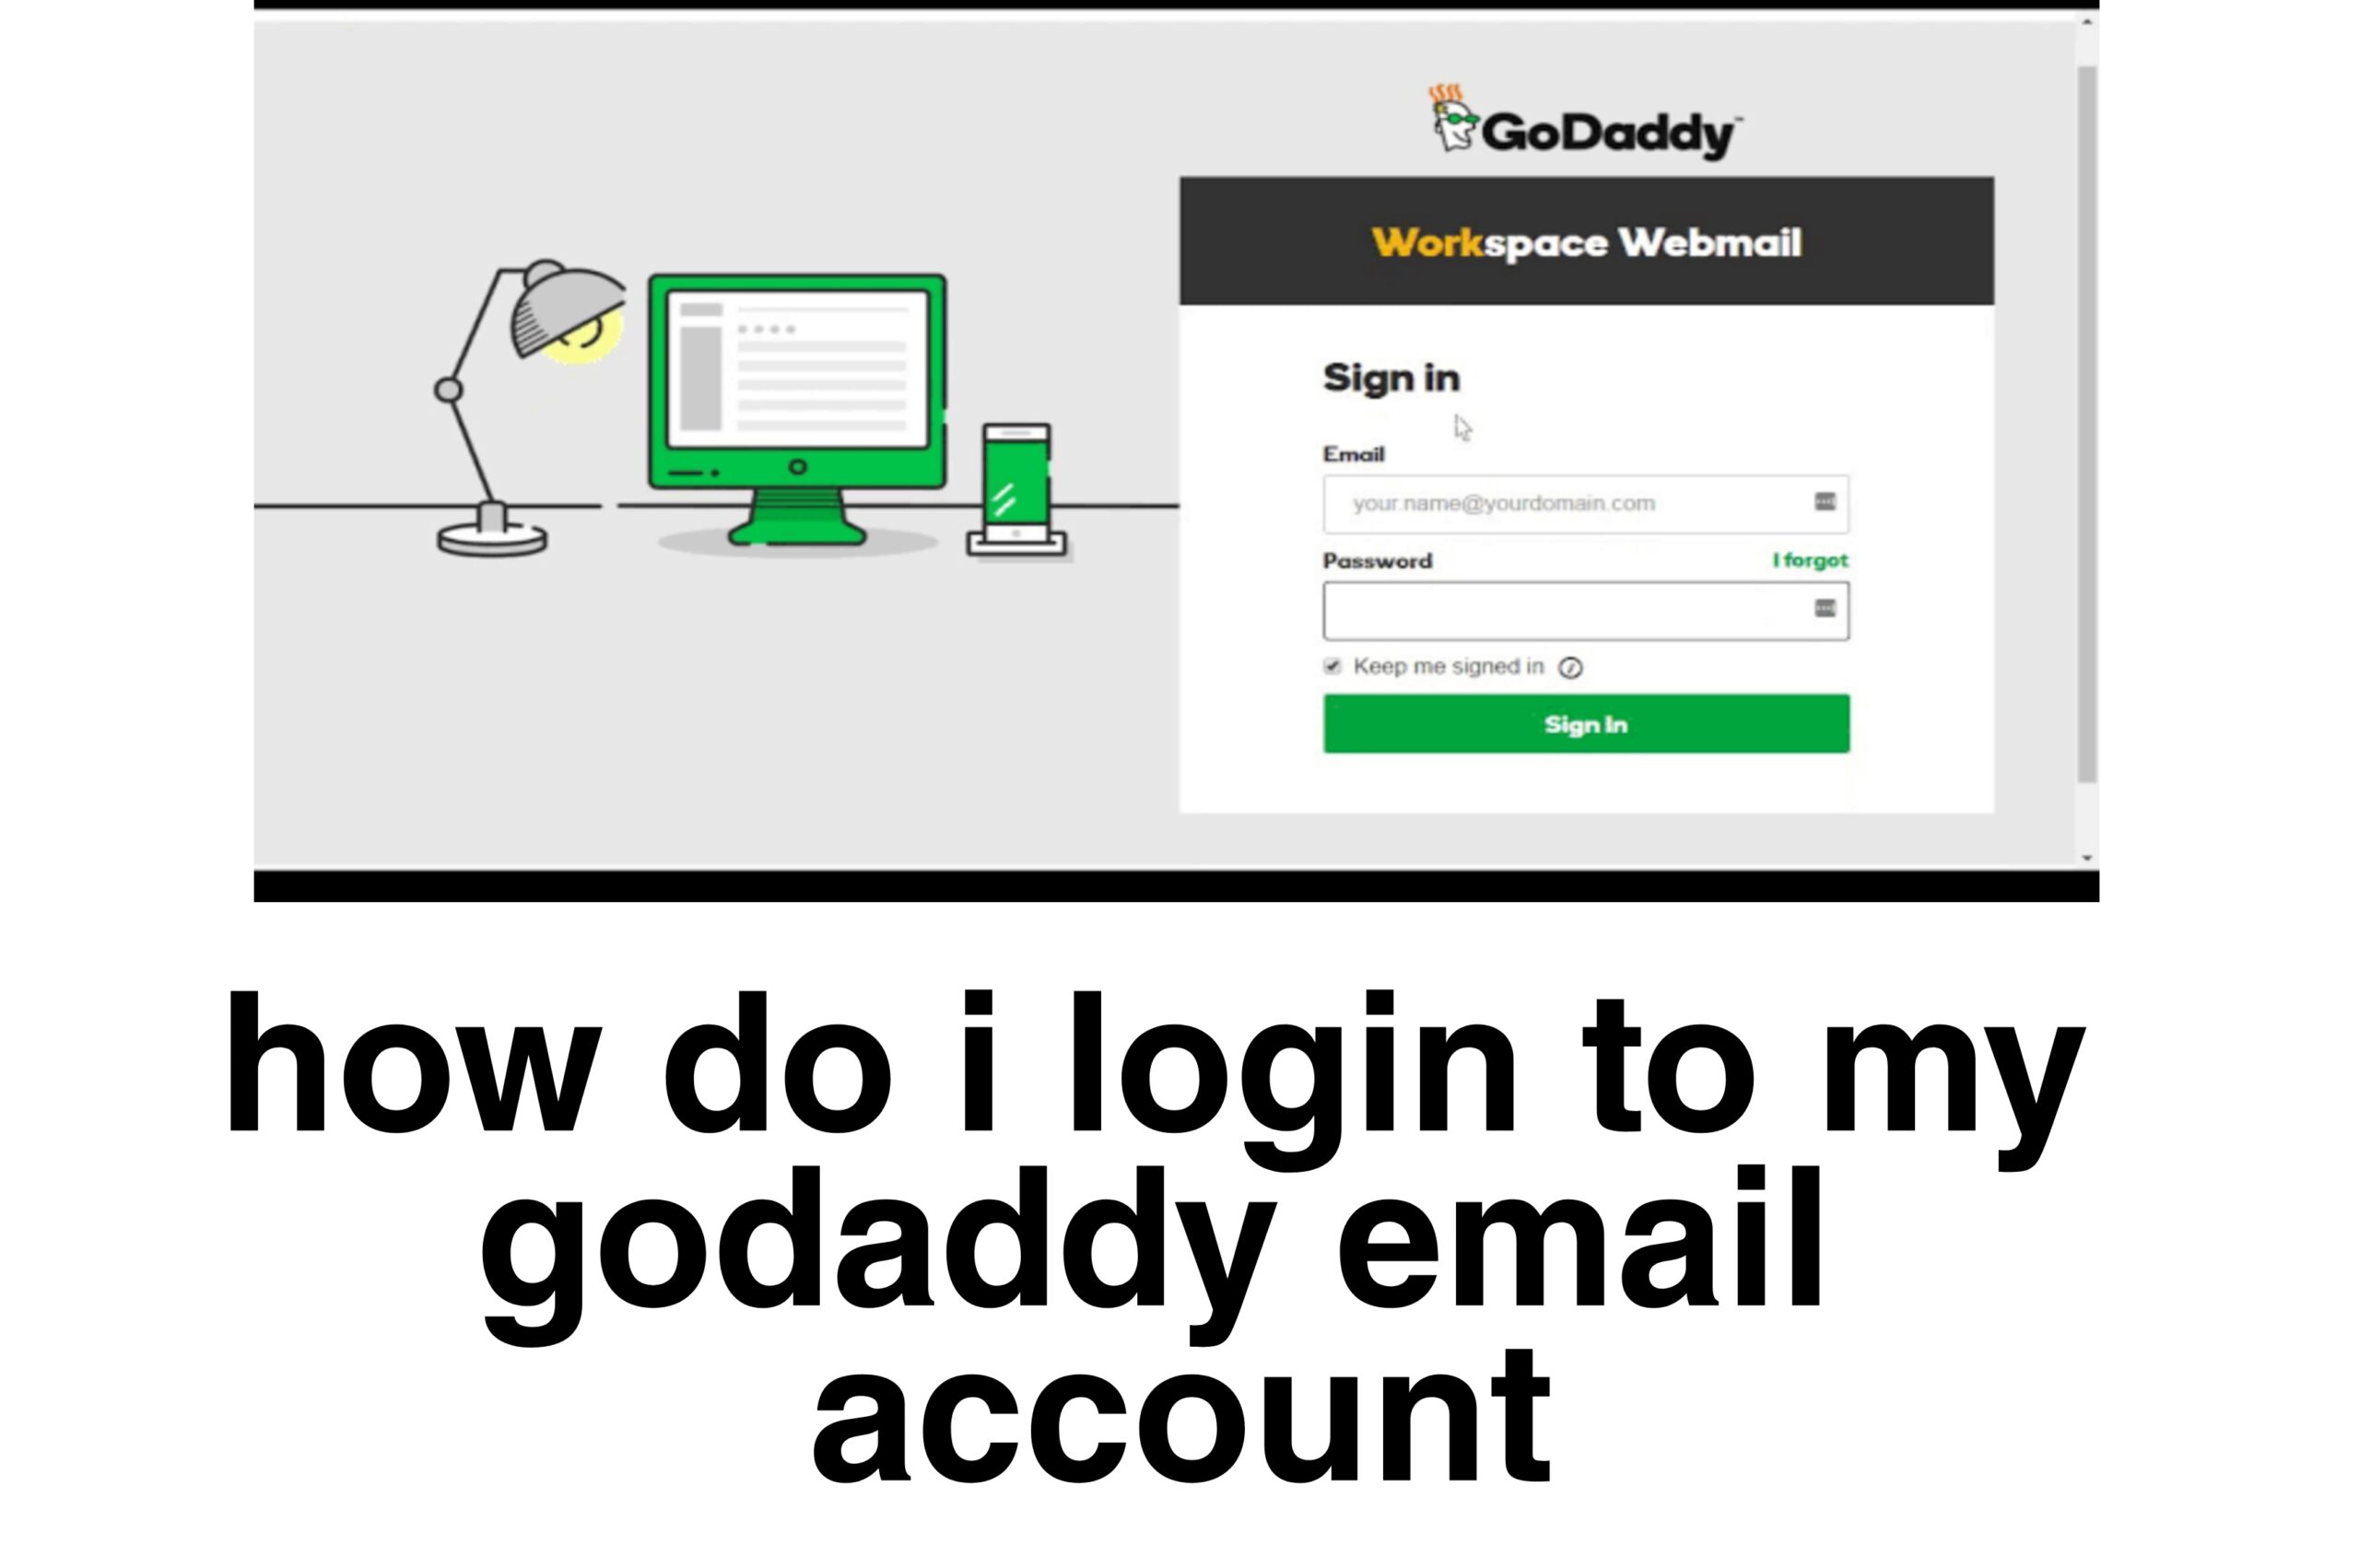 Godaddy webmail